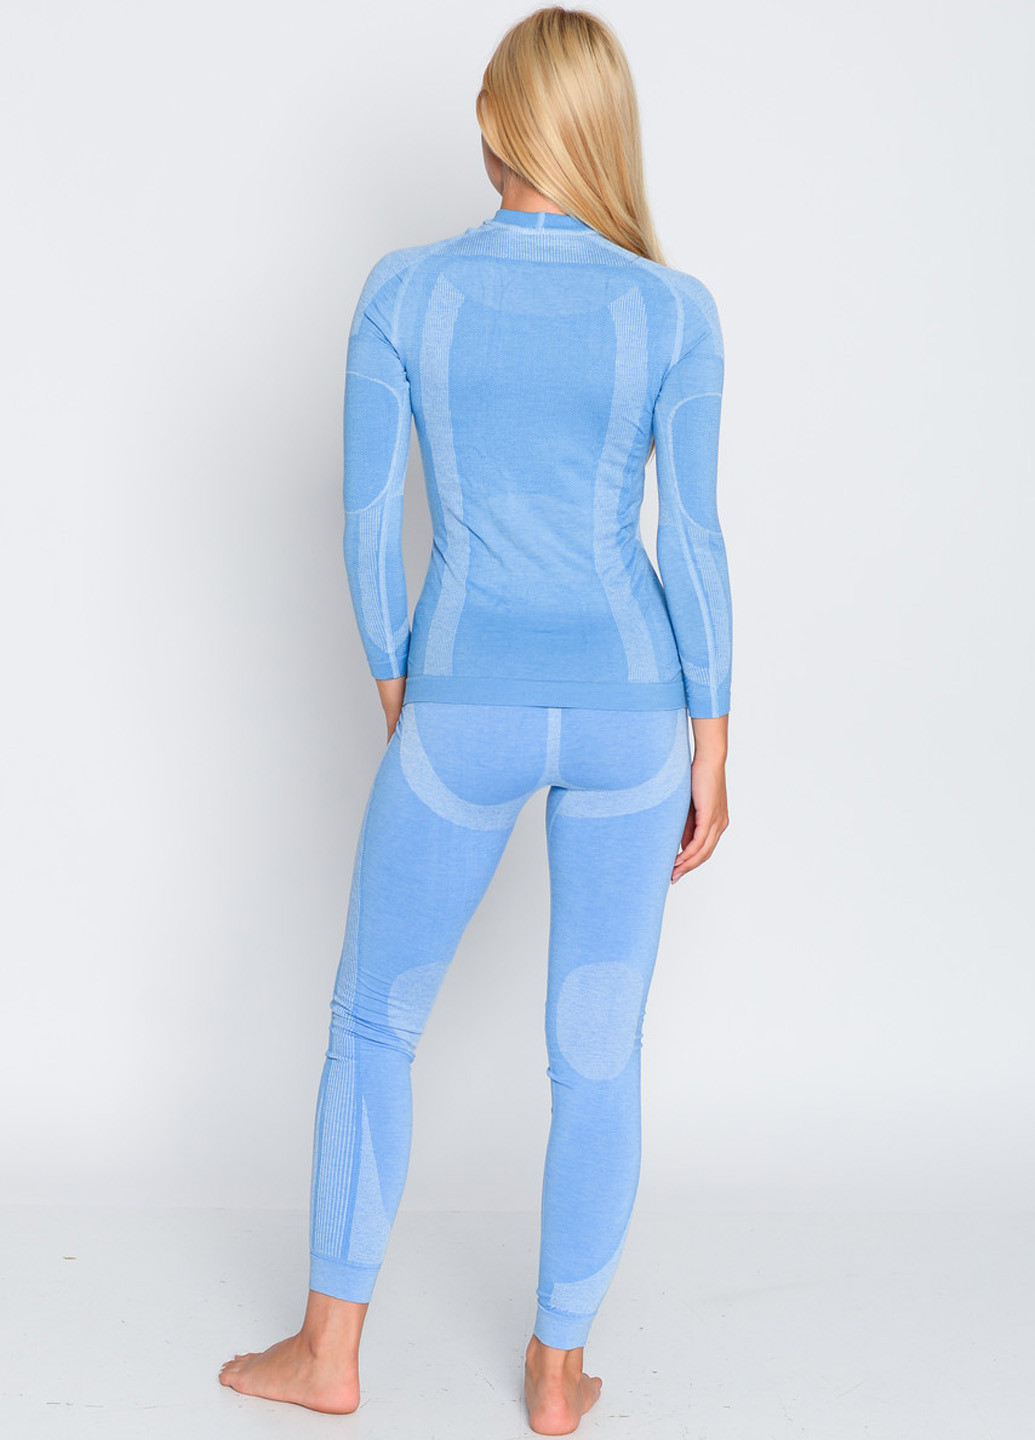 Женская термокофта с шерстью мериноса XS Hanna Style голубой спортивный